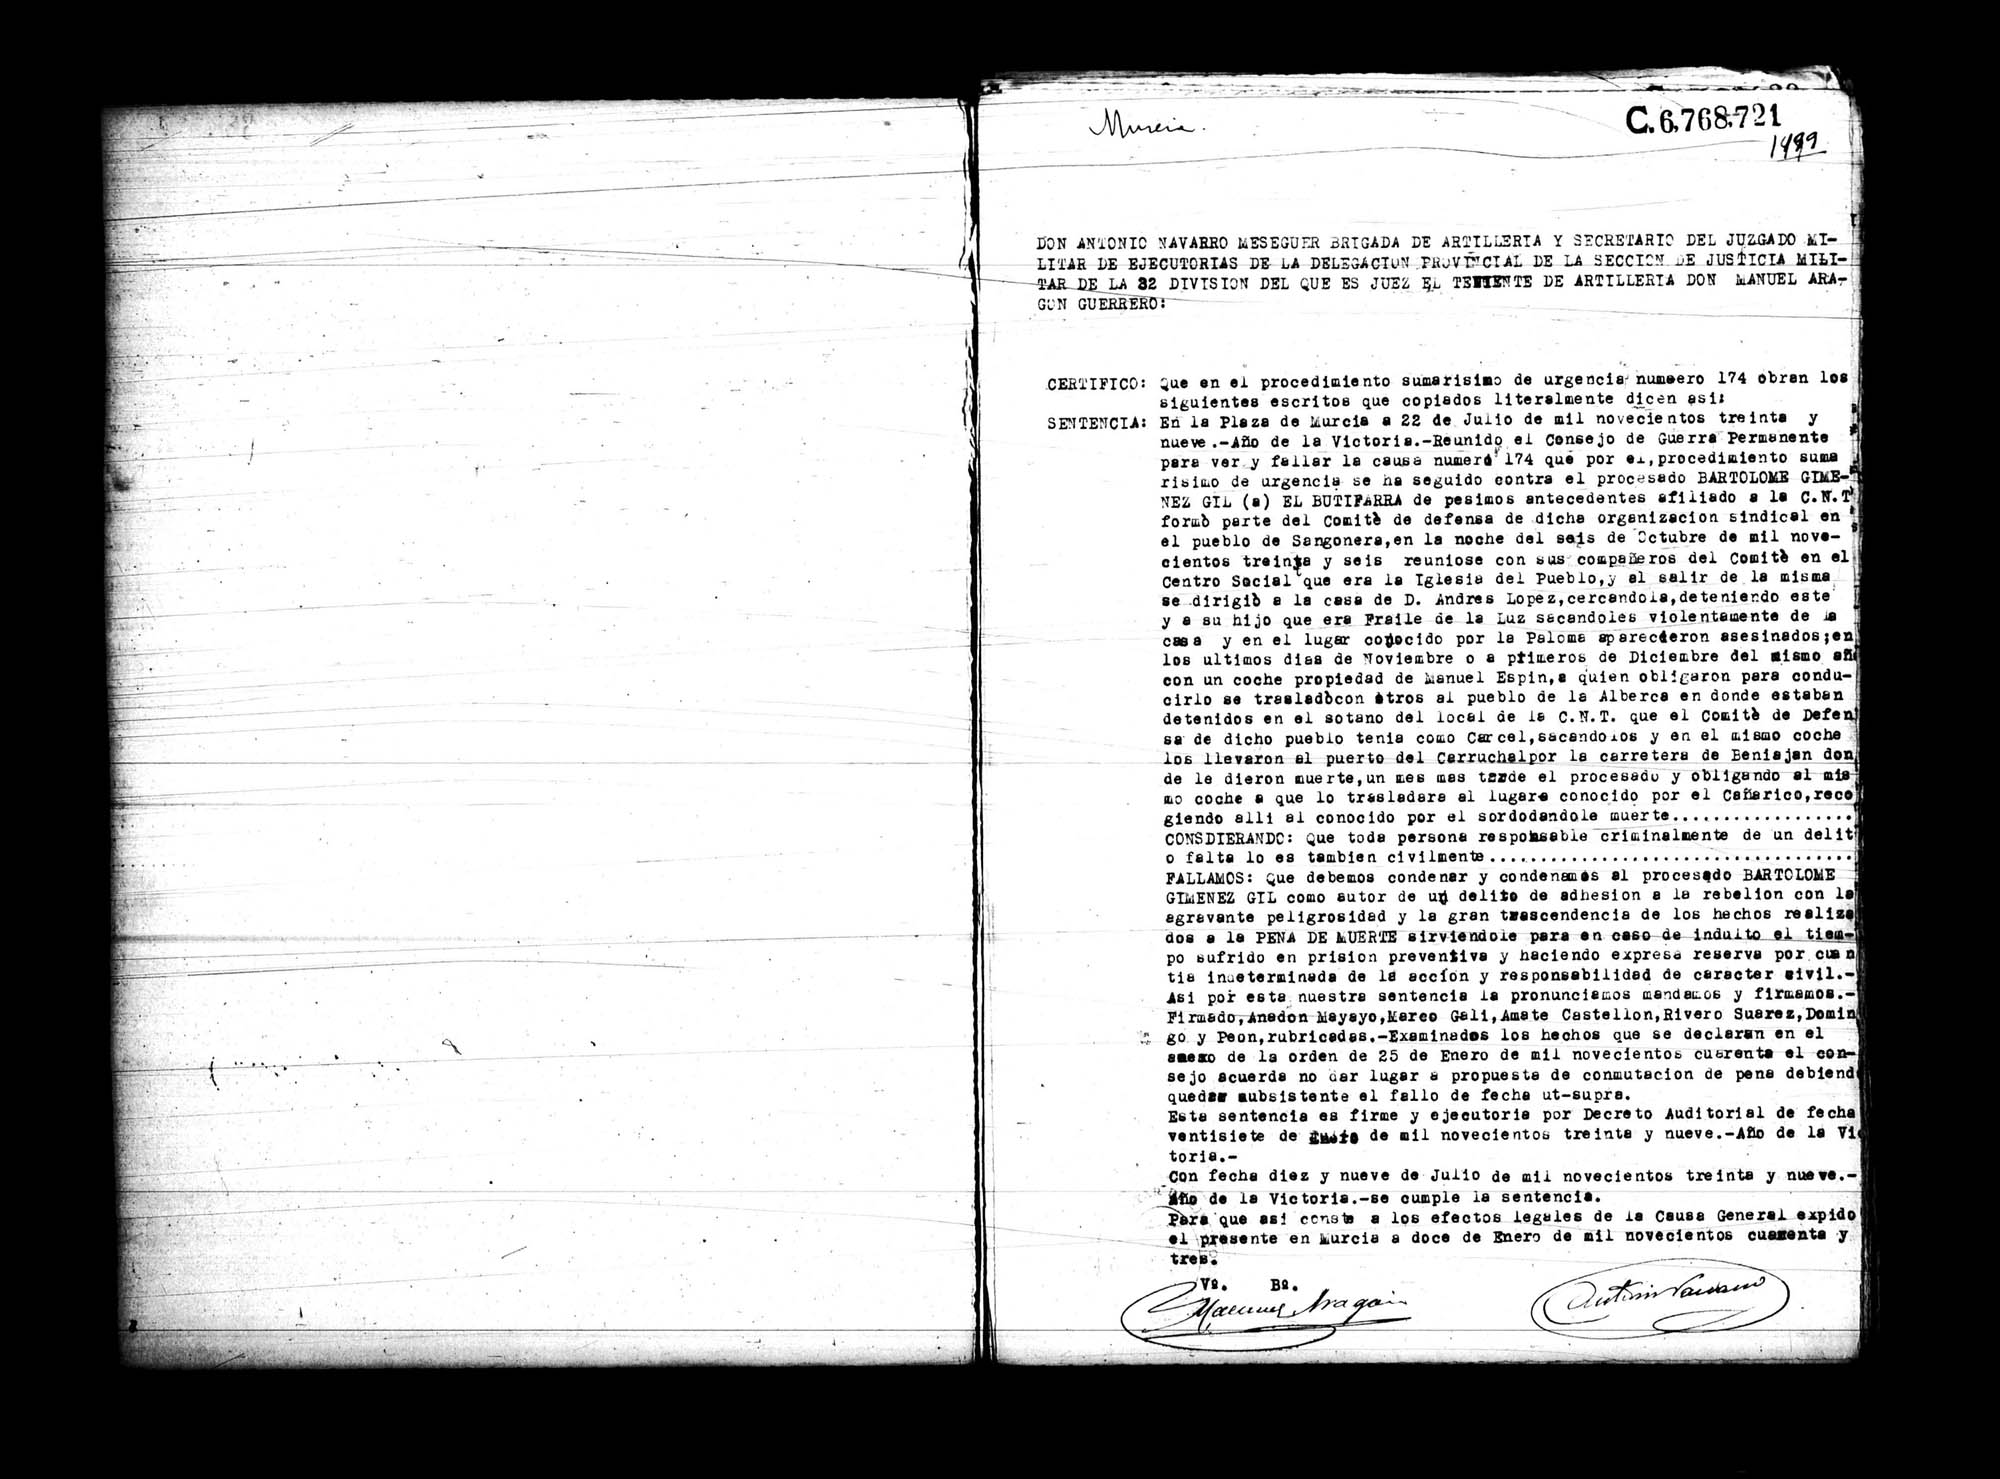 Certificado de la sentencia pronunciada contra Bartolomé Giménez Gil, causa 174, el 22 de julio de 1939 en Murcia.